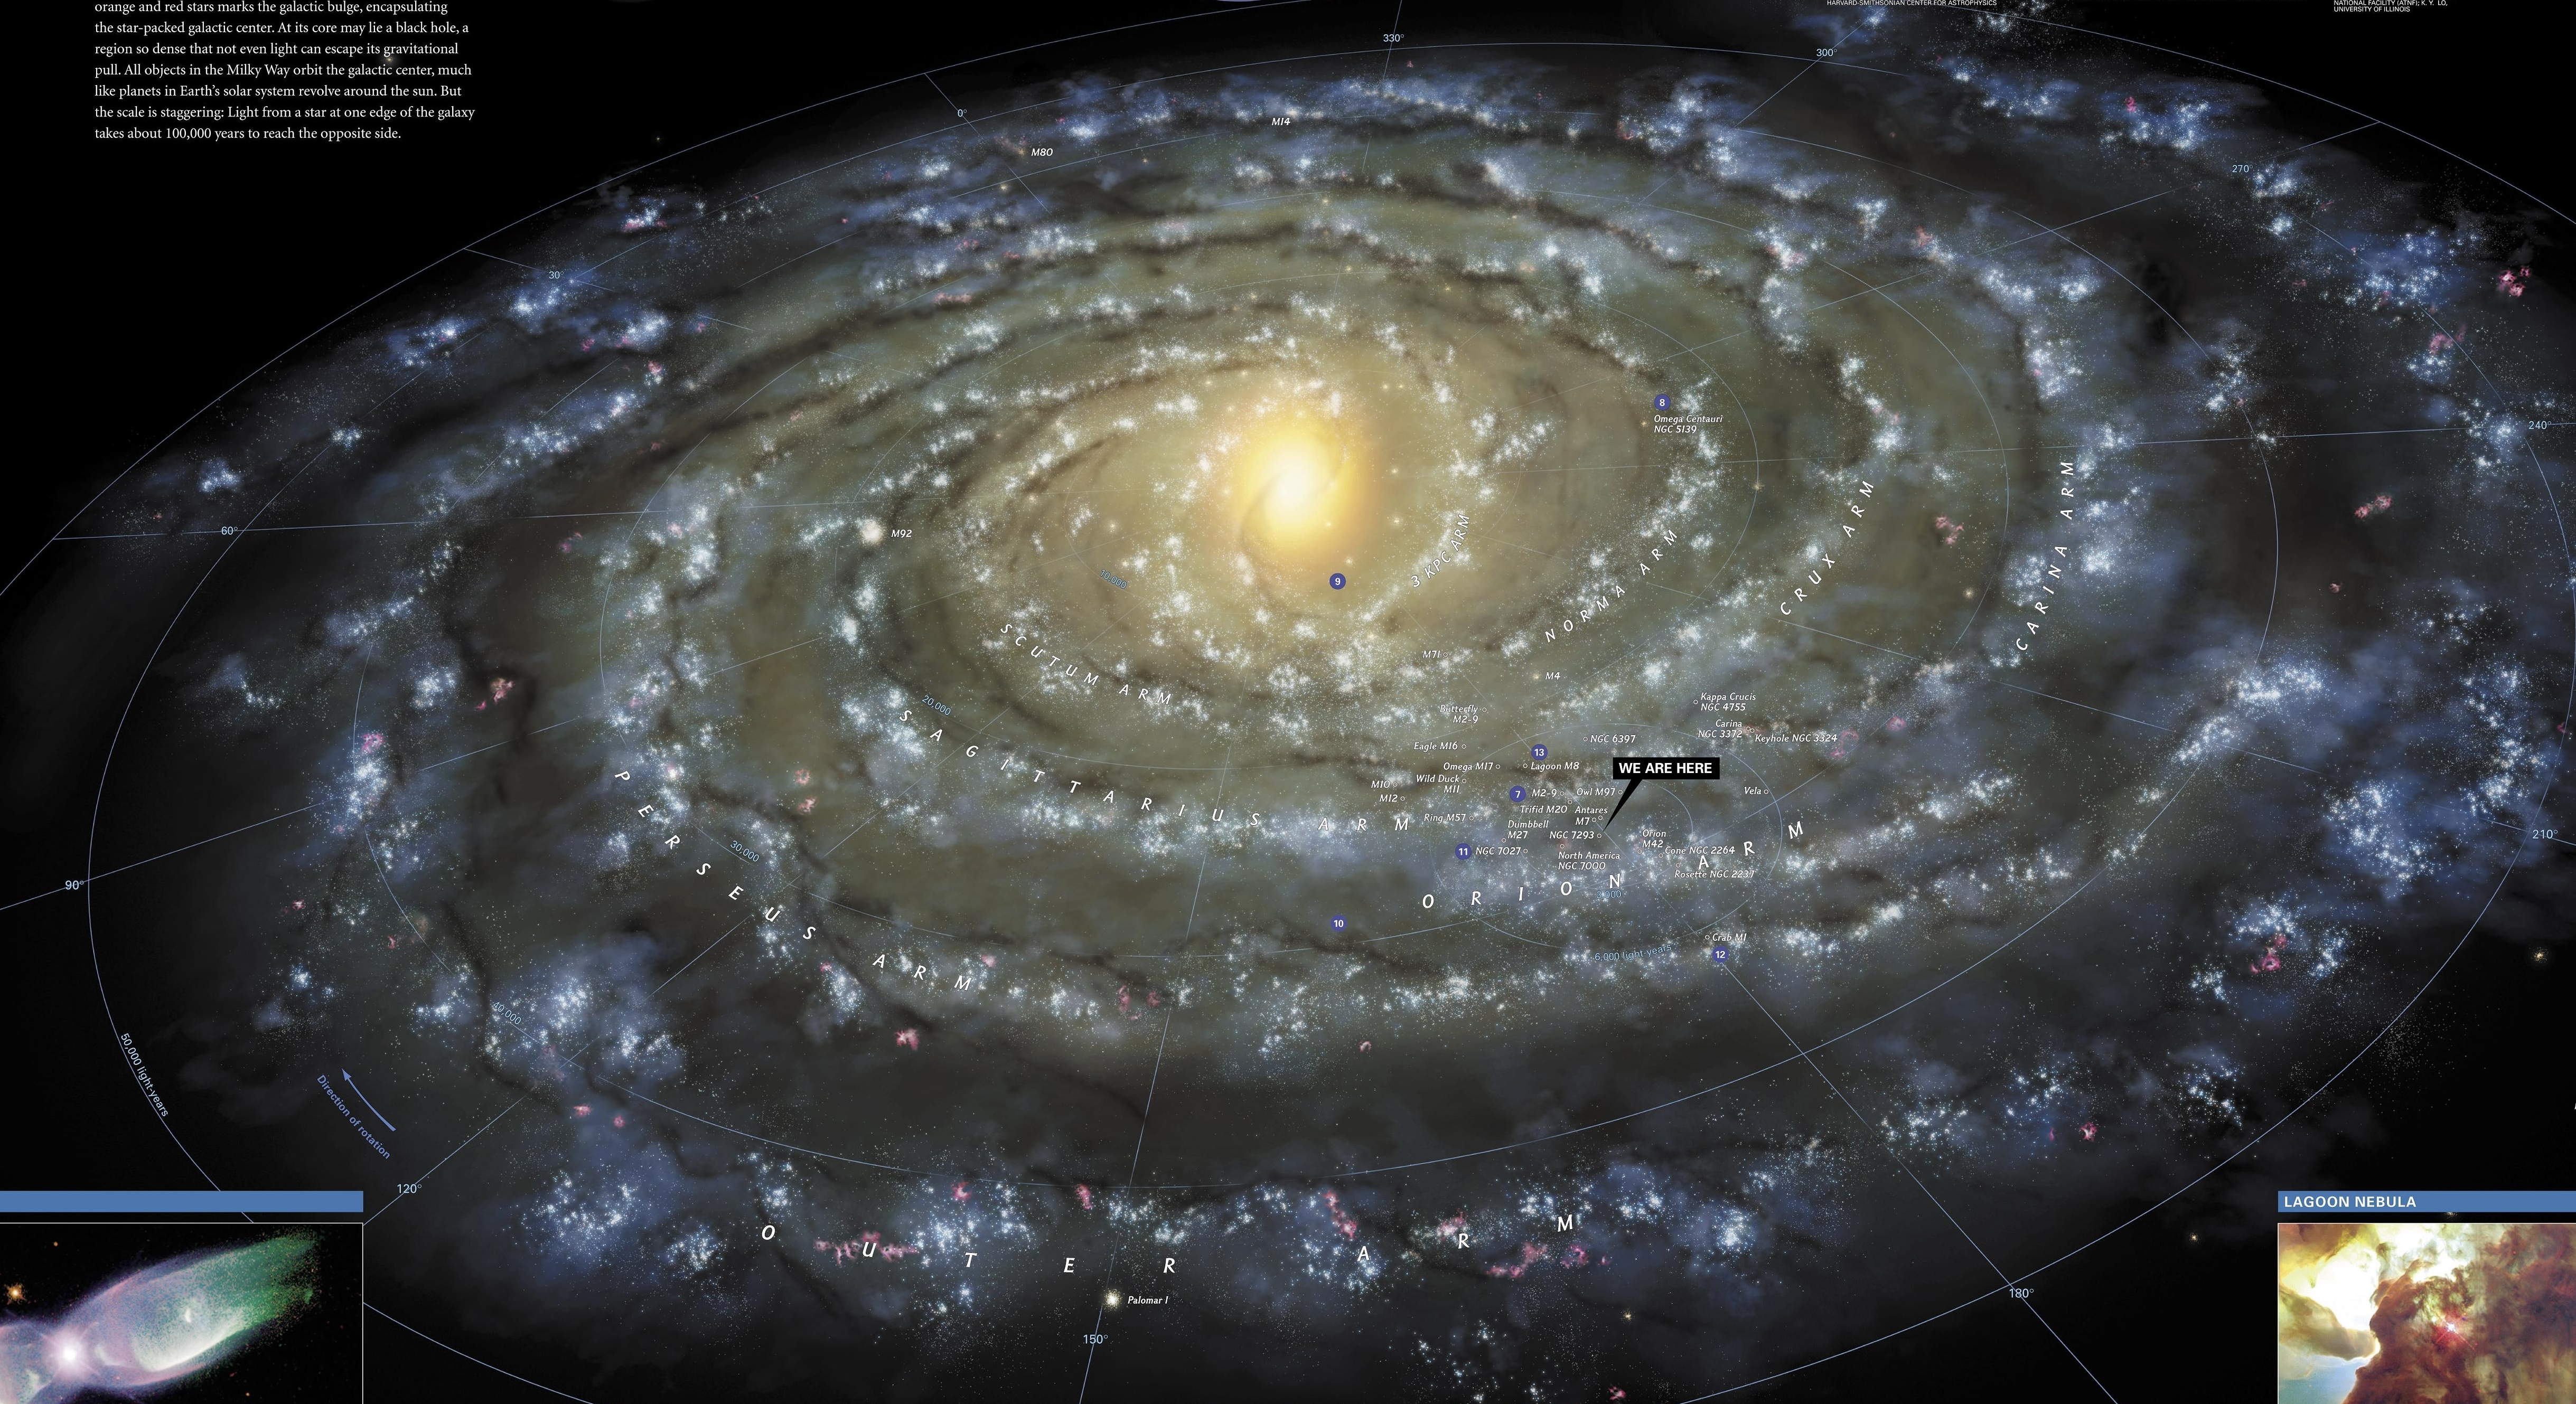 Какой тип галактики млечный путь